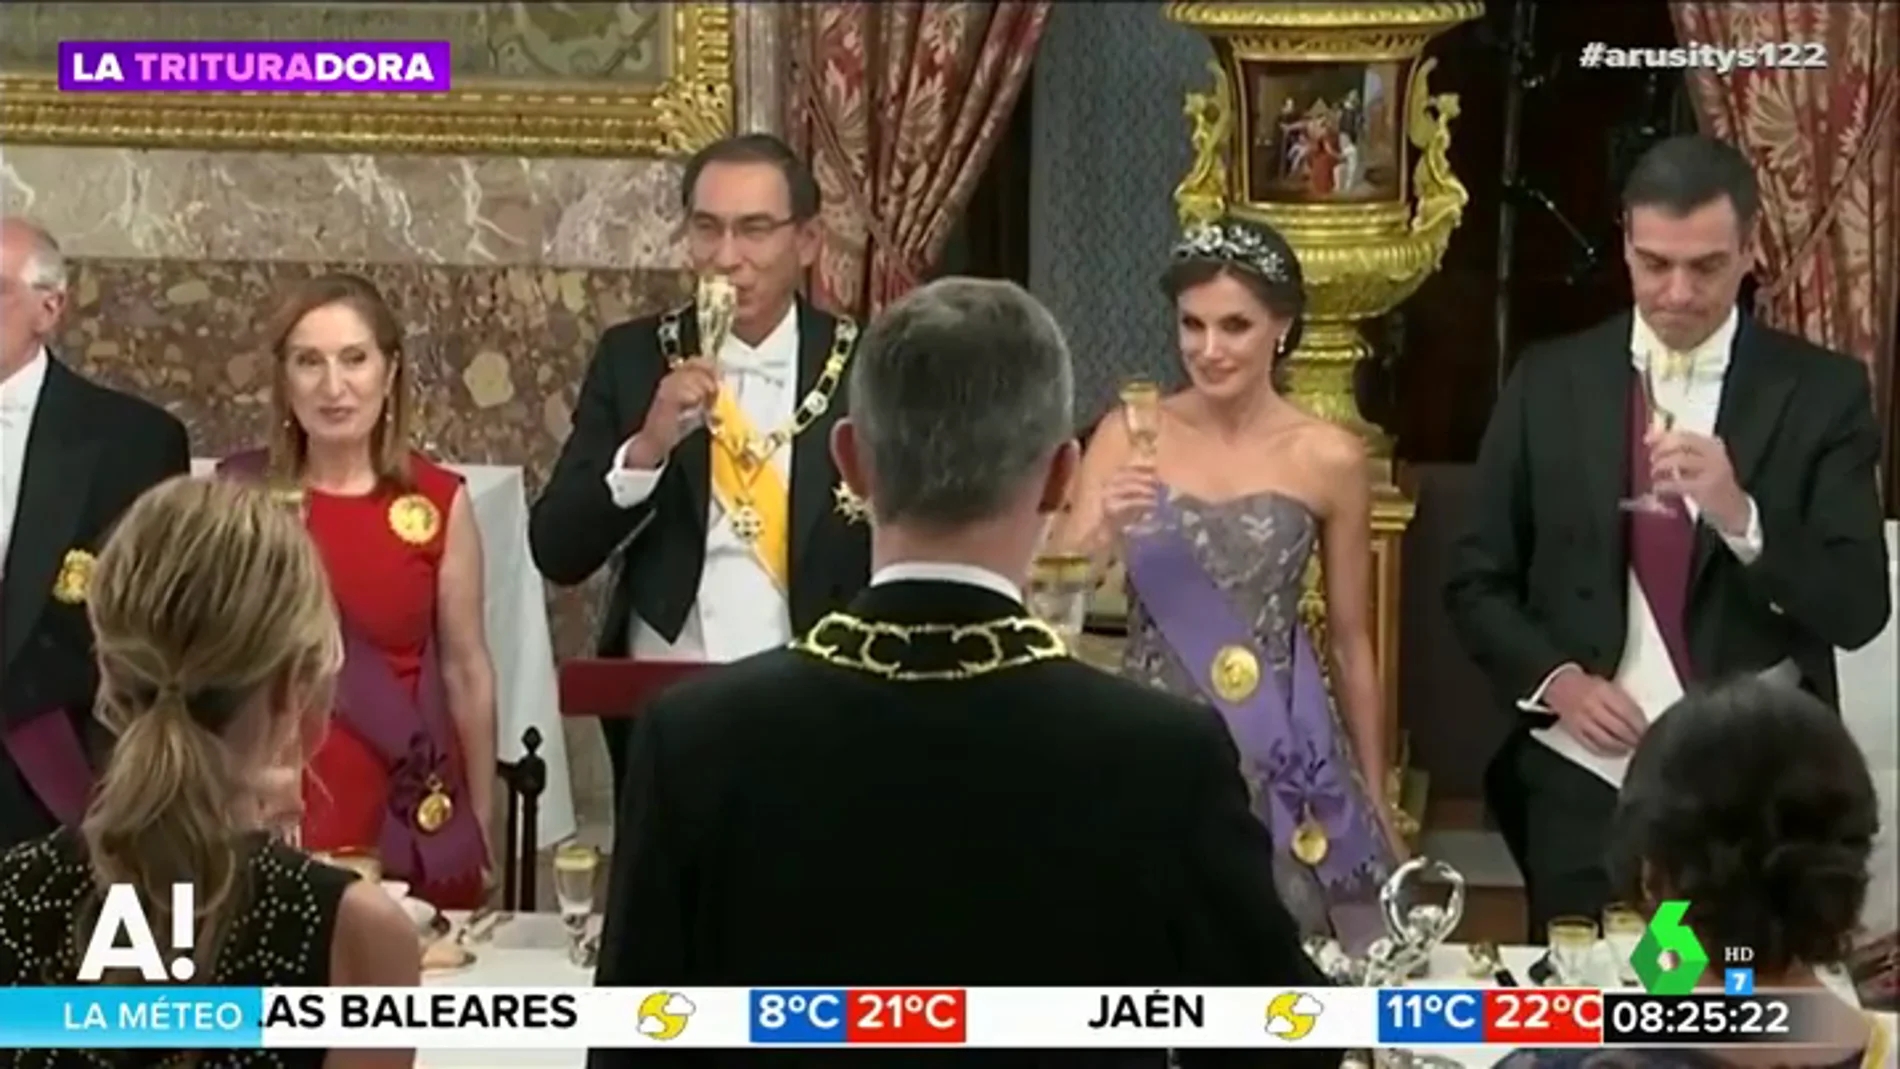 Este es el polémico detalle de la reina Letizia que eclipsa su espectacular vestido de princesa Disney